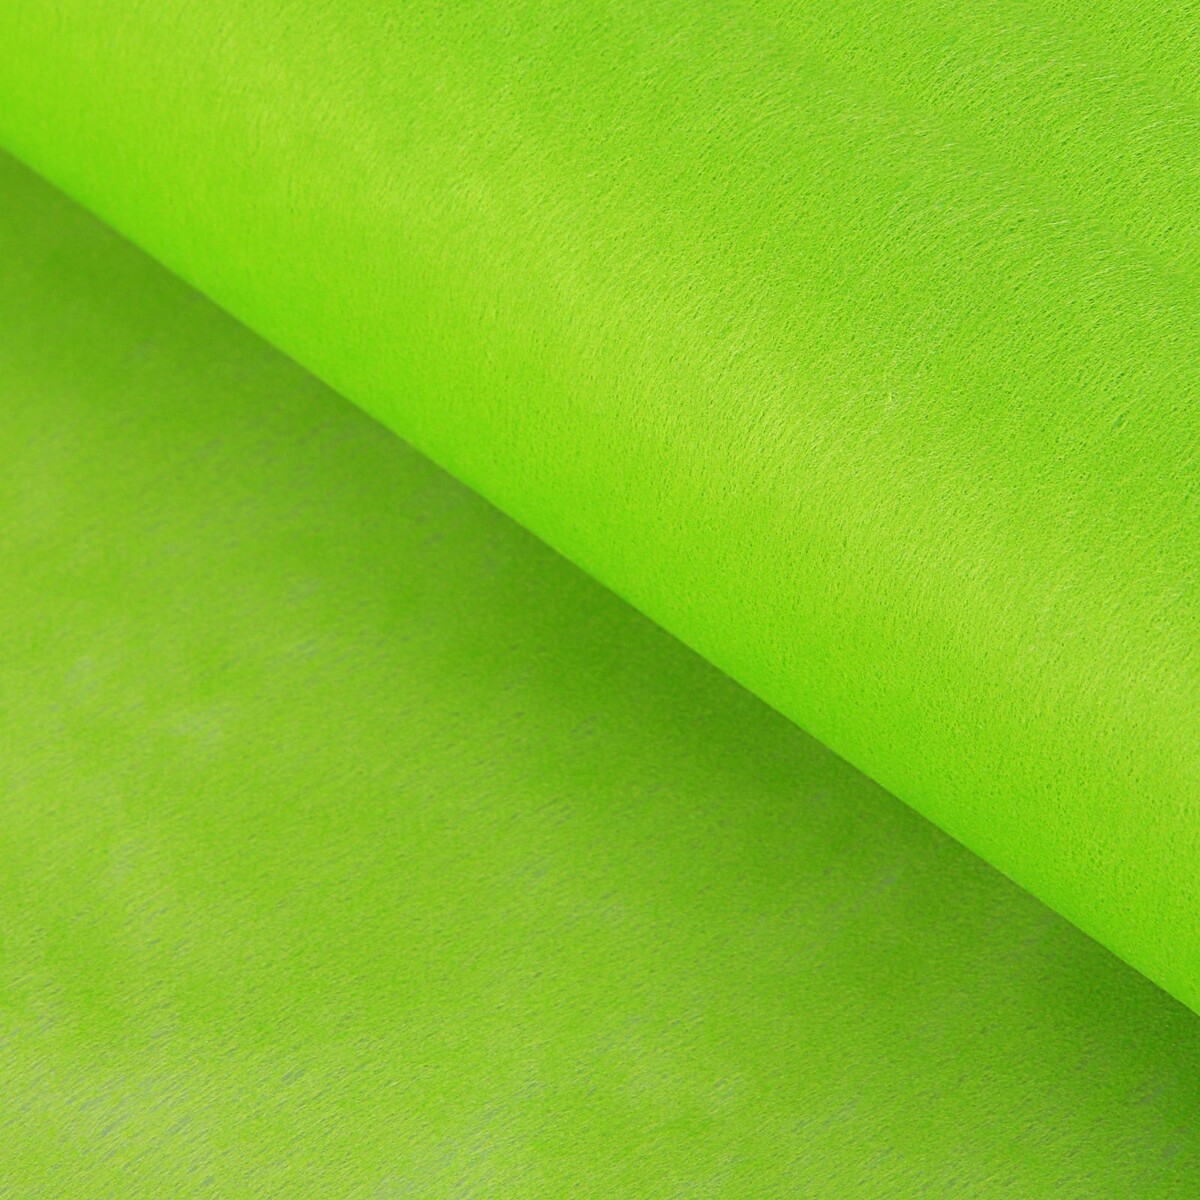 Фетр для упаковок и поделок, однотонный, салатовый, зеленый, двусторонний, рулон 1шт., 0,5 x 20 м мыло листовое в пластиковом футляре рулон 120 см зеленый